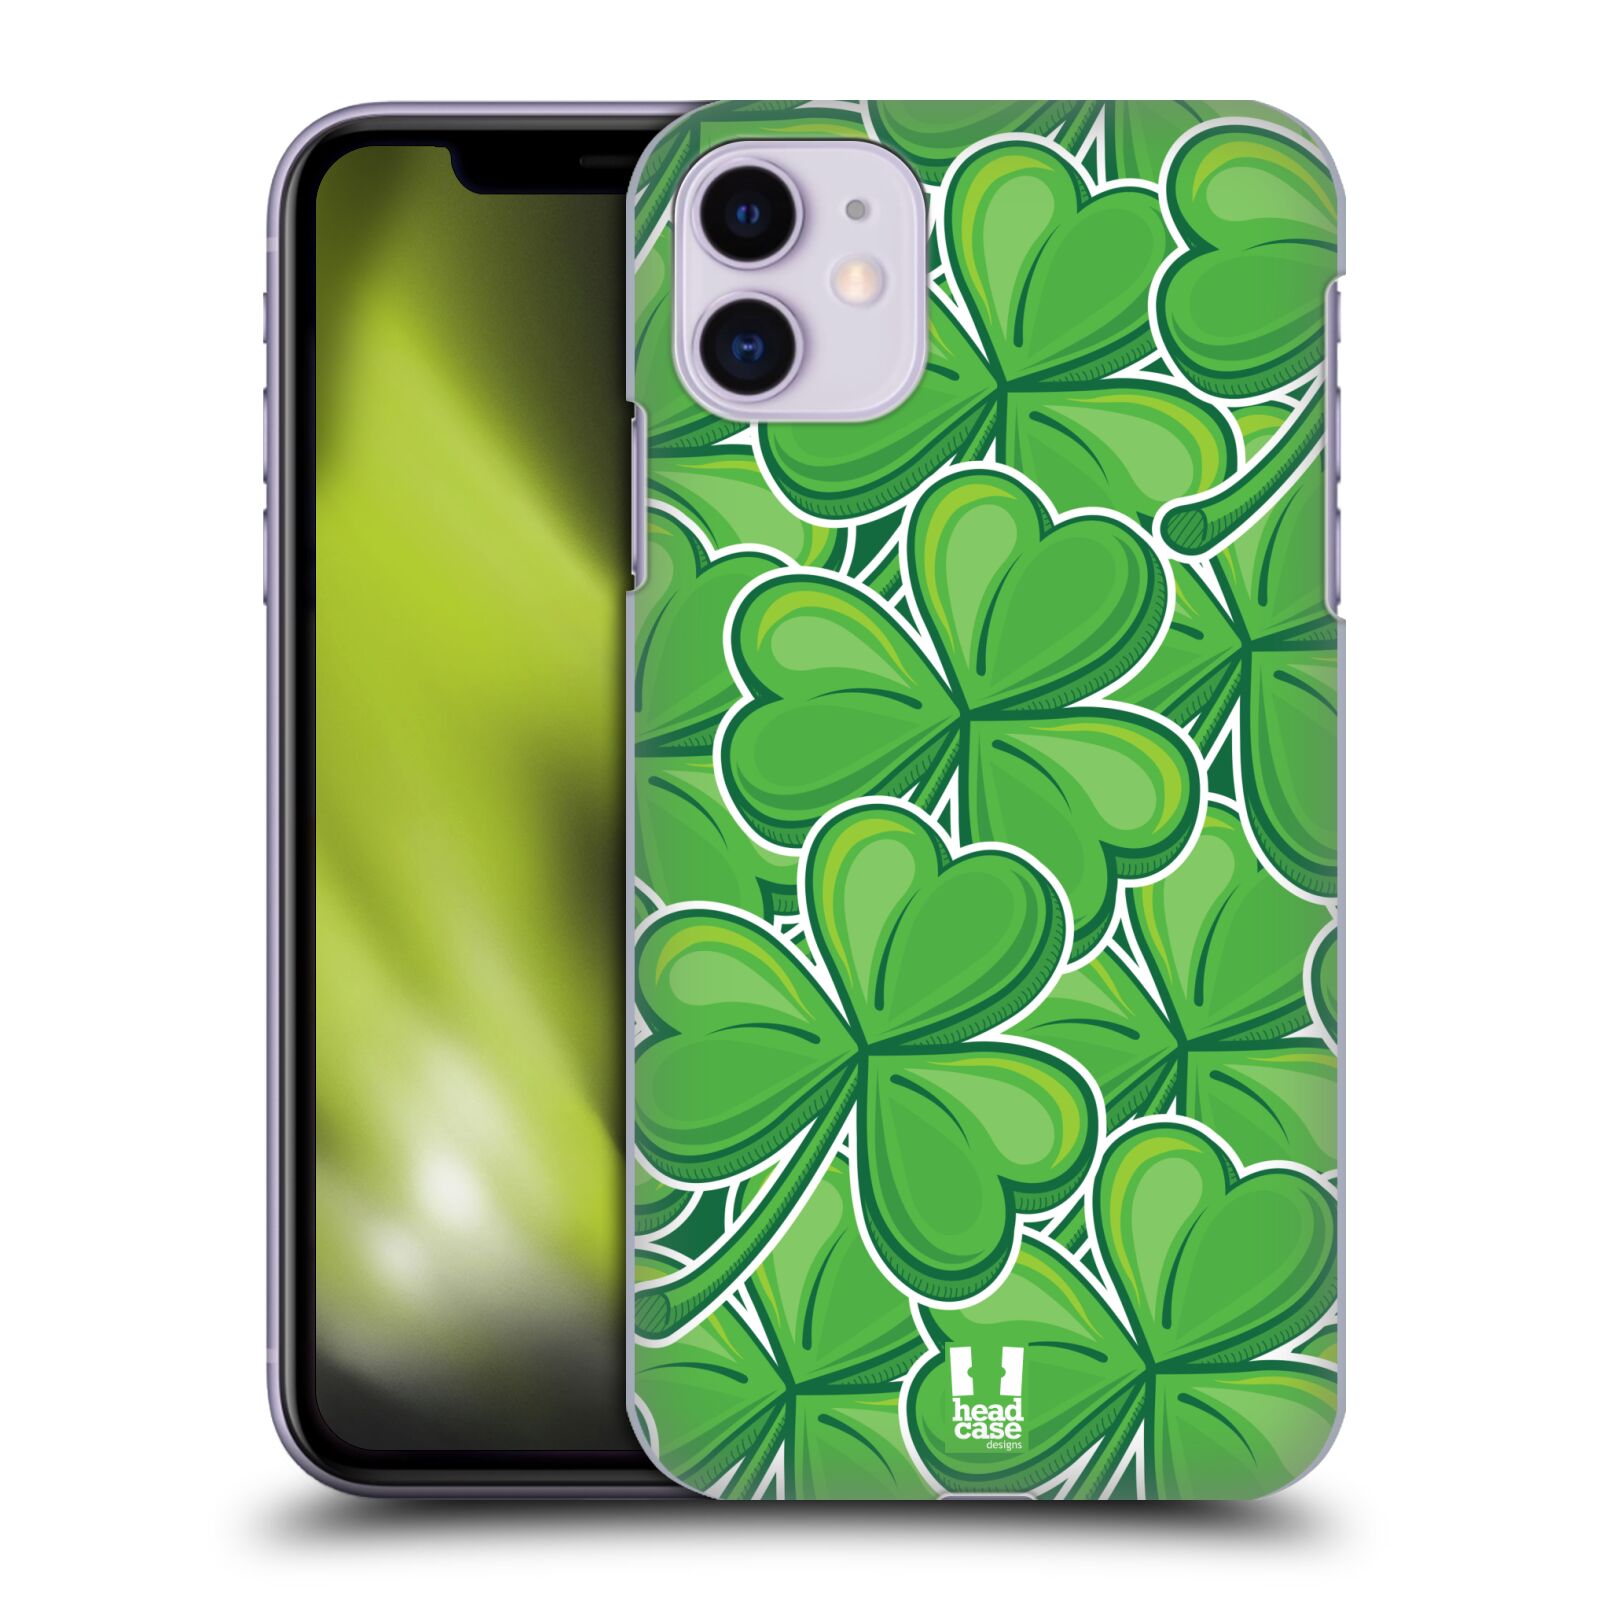 Pouzdro na mobil Apple Iphone 11 - HEAD CASE - vzor Kreslený čyřlístek zelená VELKÉ LÍSTEČKY